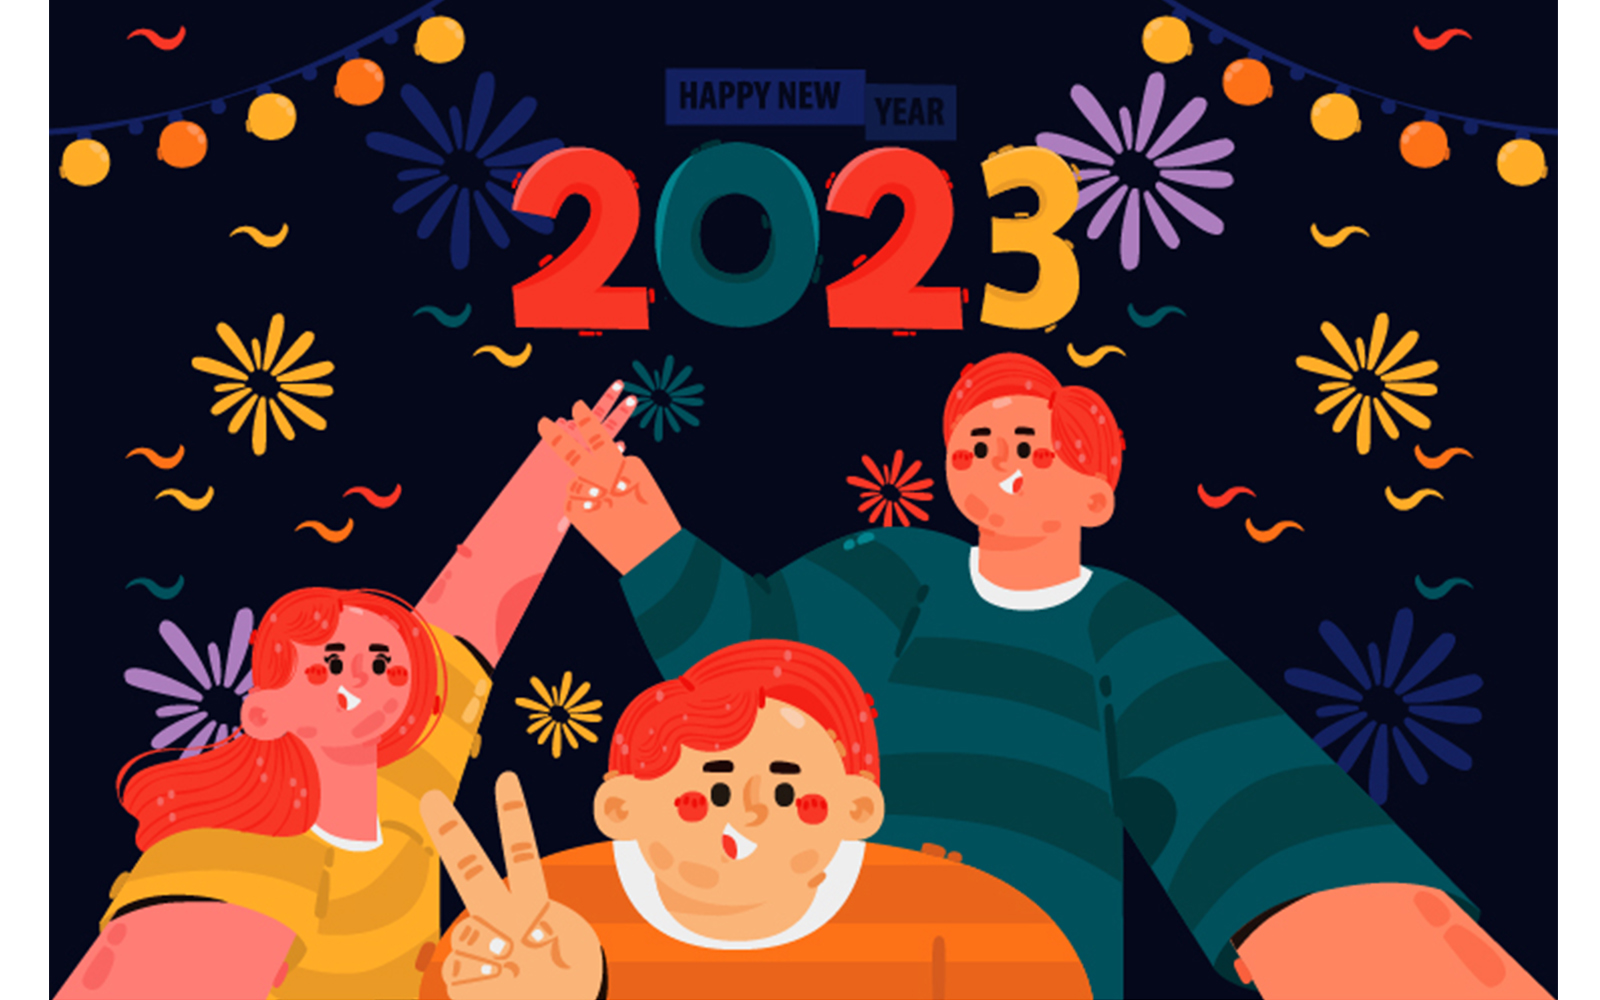 New Year Eve Celebration Background Illustration